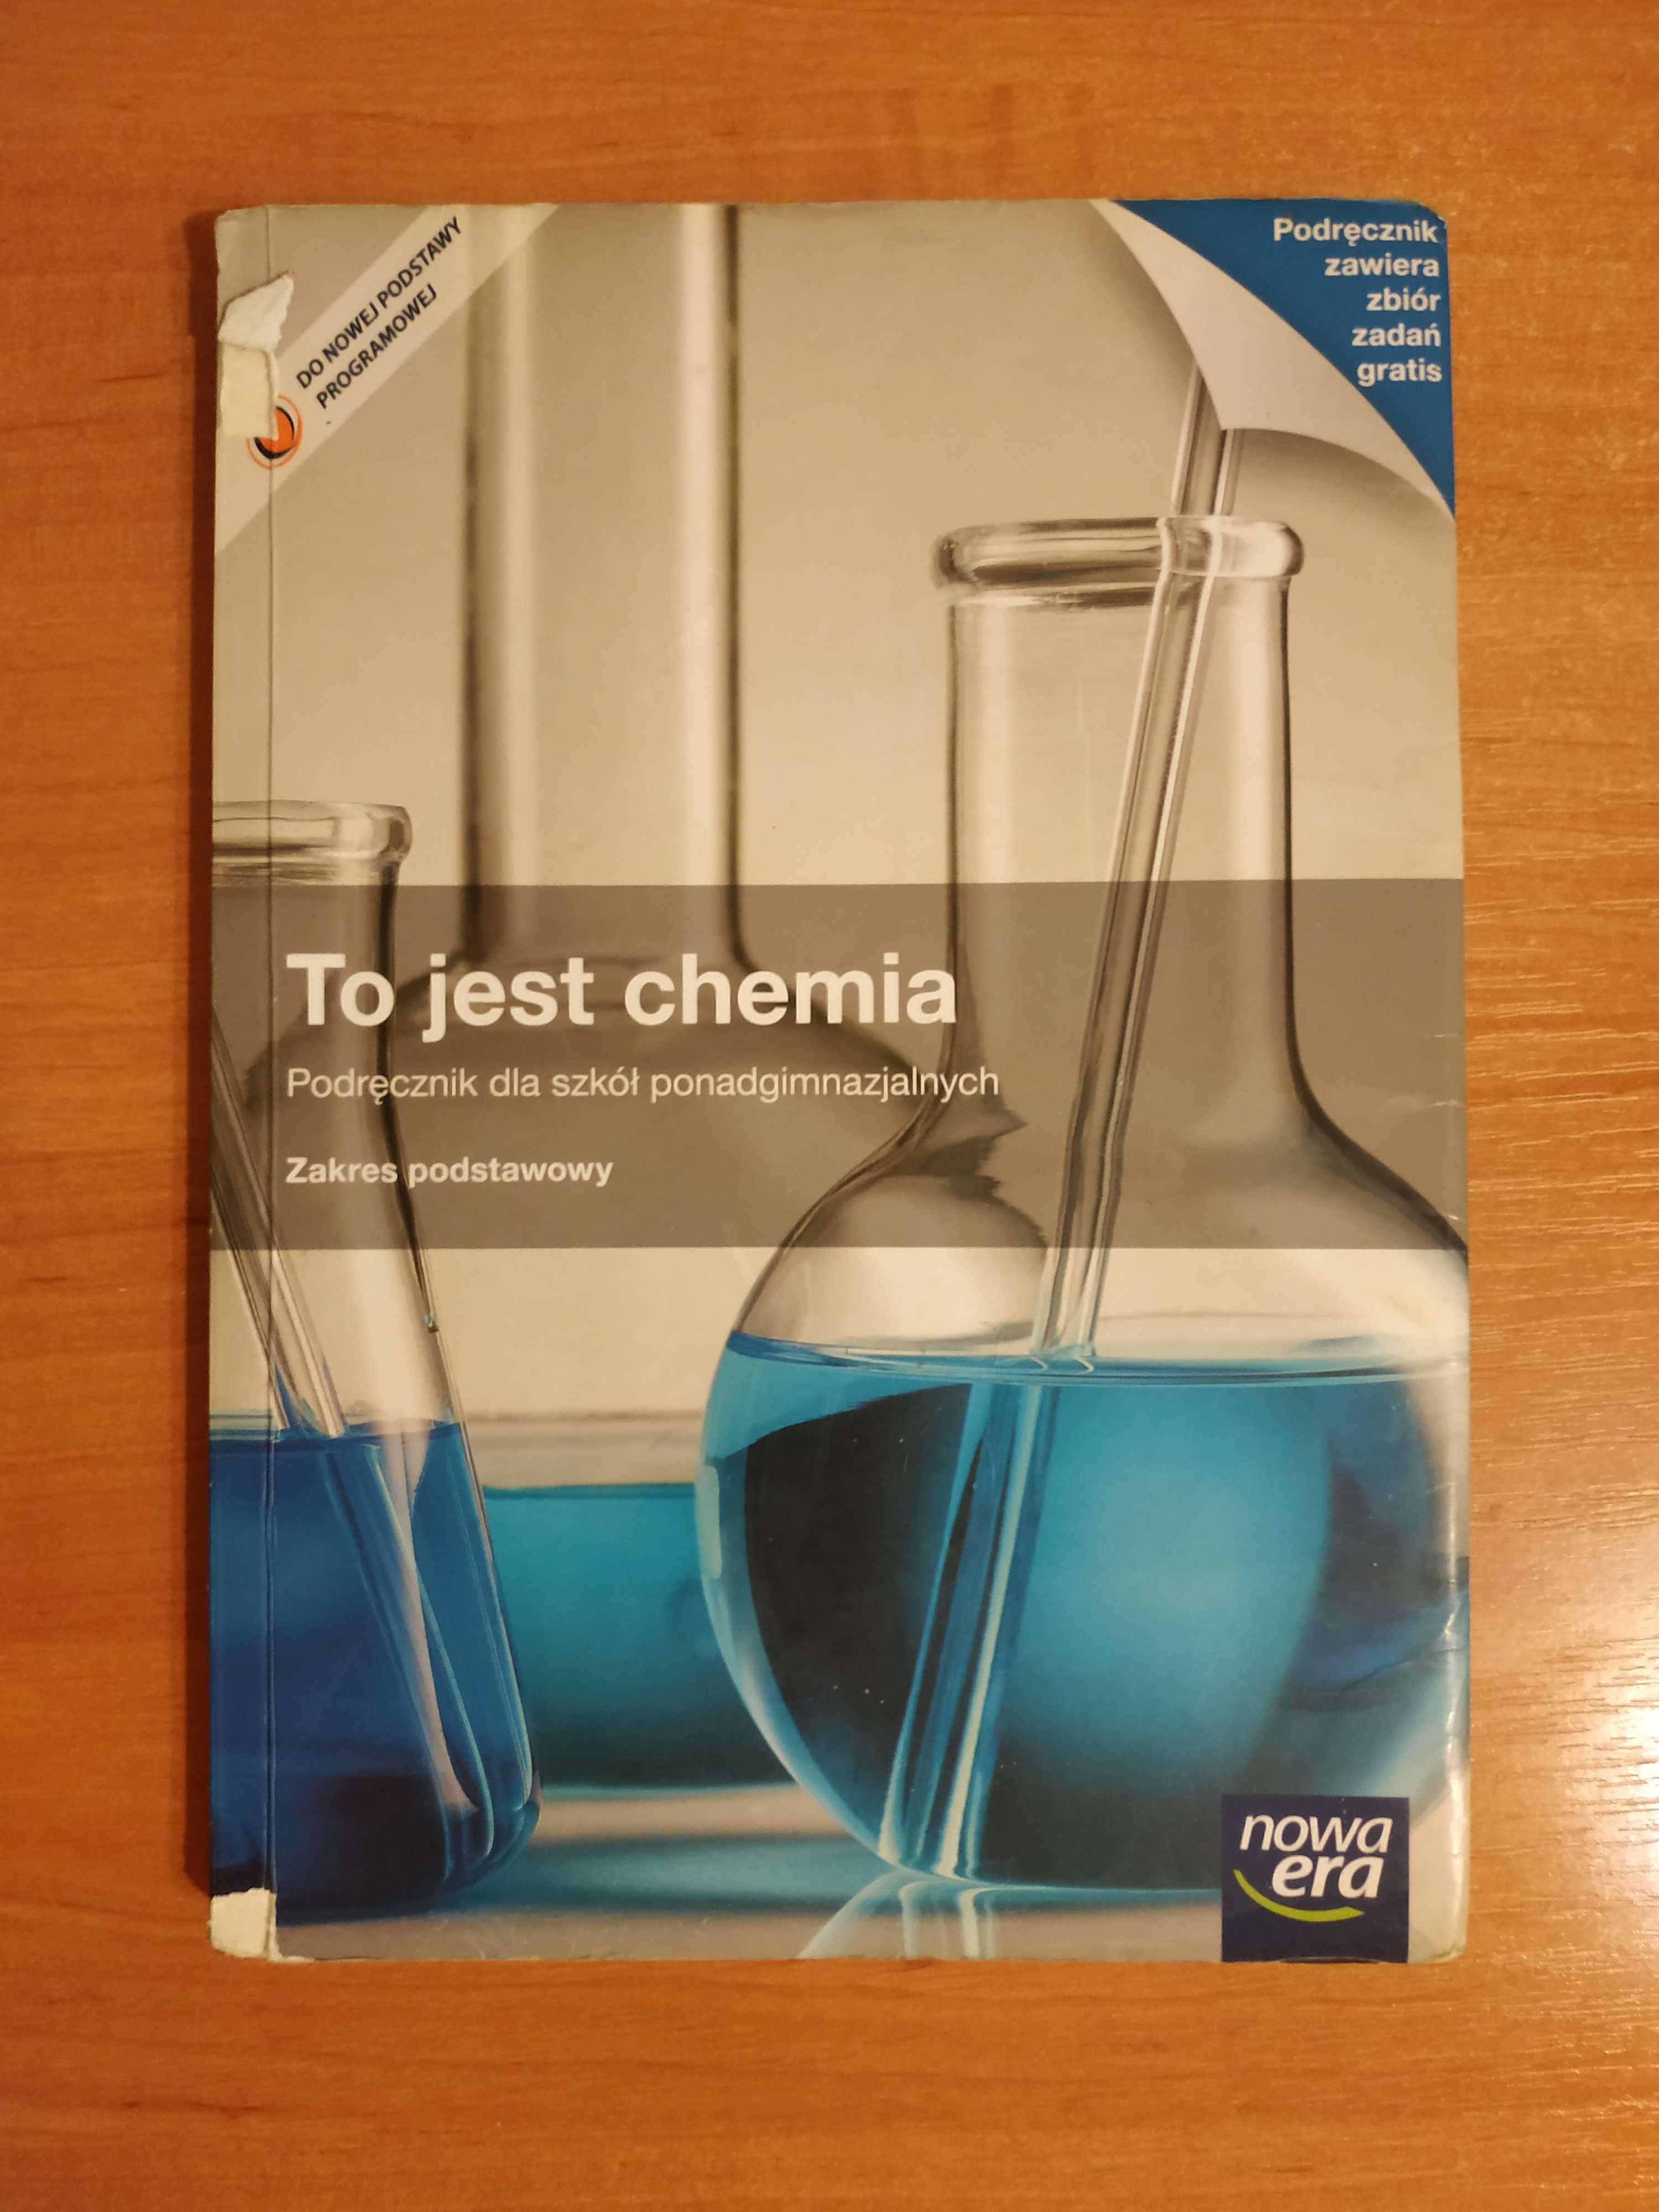 To jest chemia - podręcznik dla szkół ponadgimnazjalnych